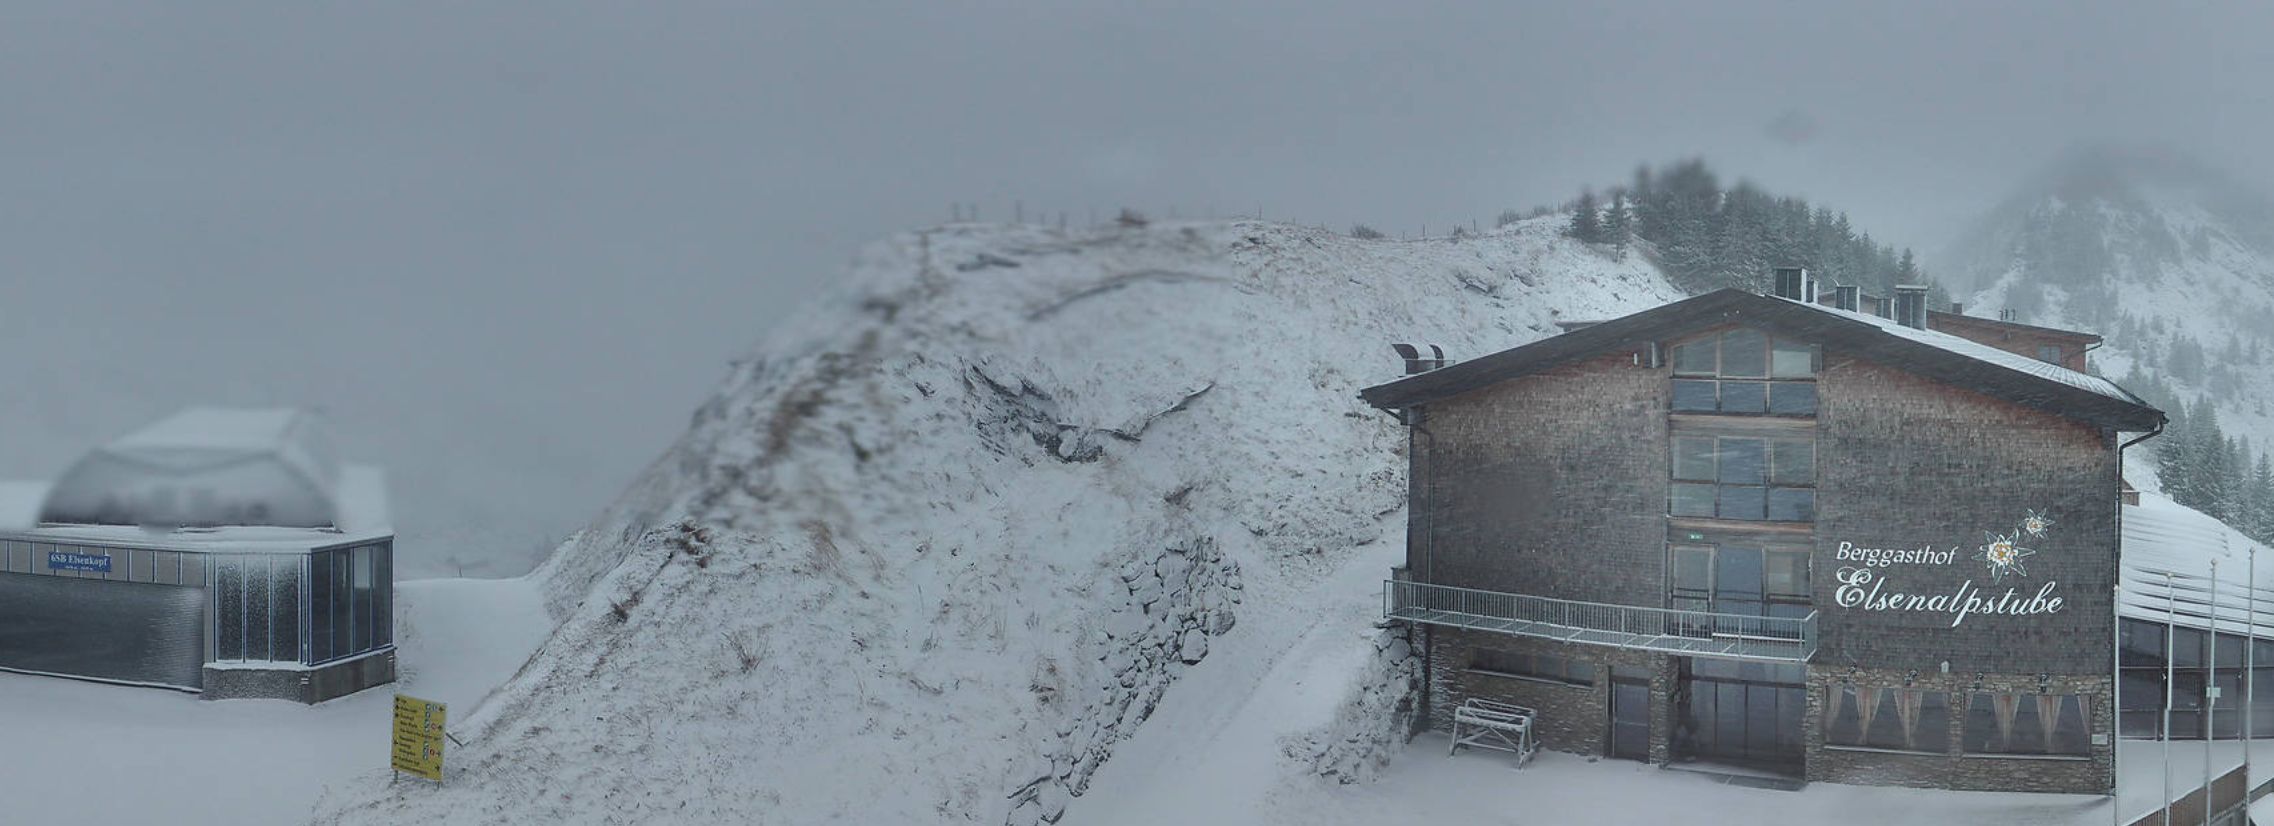 Damüls, lichte sneeuwval boven de 1800 meter